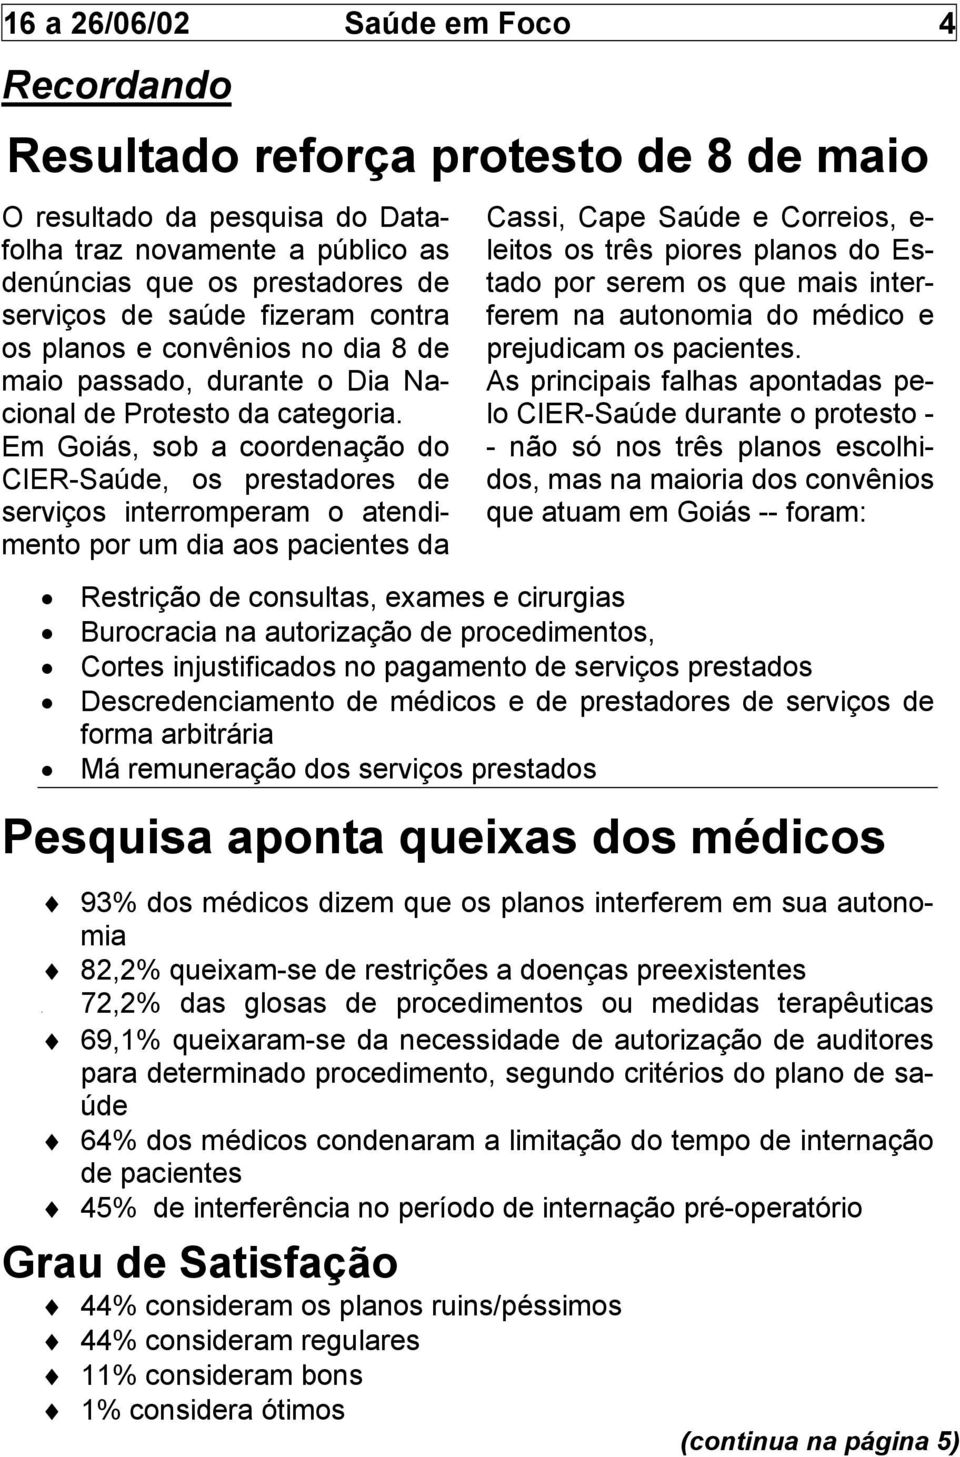 Em Goiás, sob a coordenação do CIER-Saúde, os prestadores de serviços interromperam o atendimento por um dia aos pacientes da Cassi, Cape Saúde e Correios, e- leitos os três piores planos do Estado